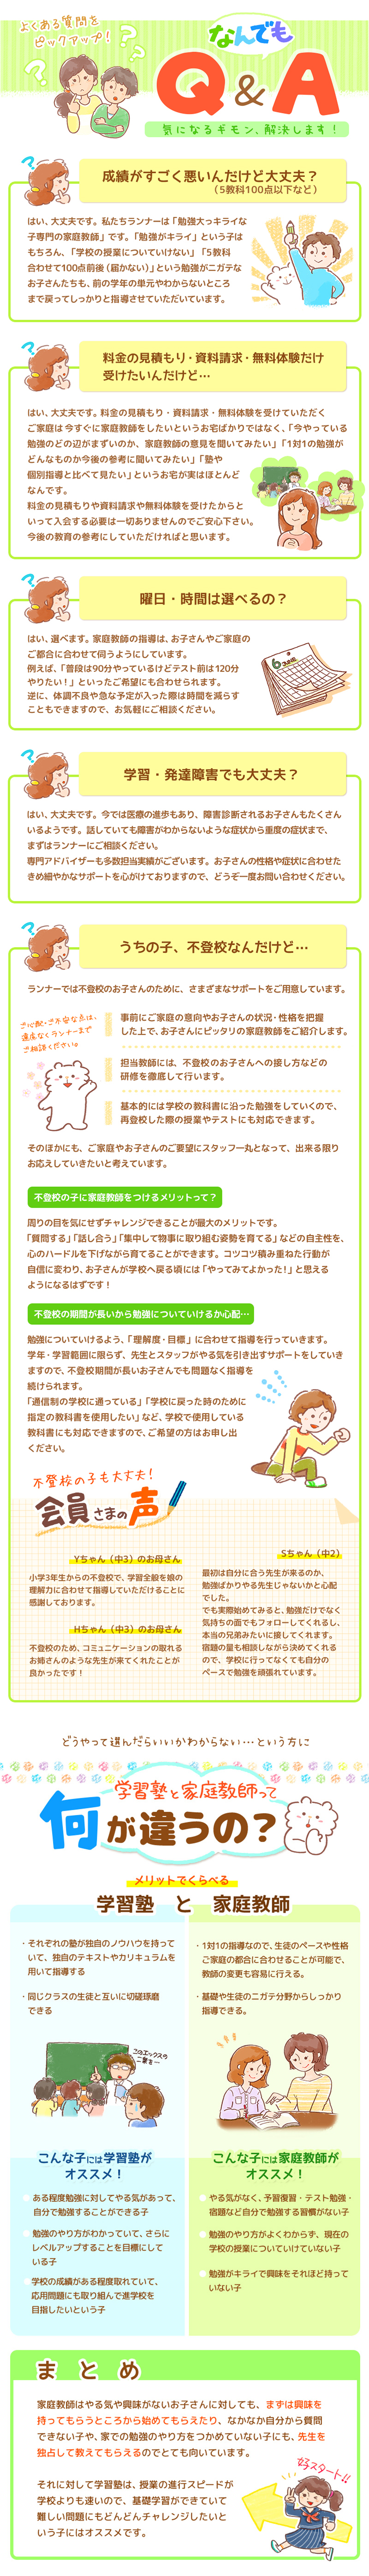 【家庭教師-熊本県-球磨郡のお客様のページ】【画像が表示されない場合はページ下部に画像と同じ内容をテキストで掲載していますのでそちらをご覧ください。】